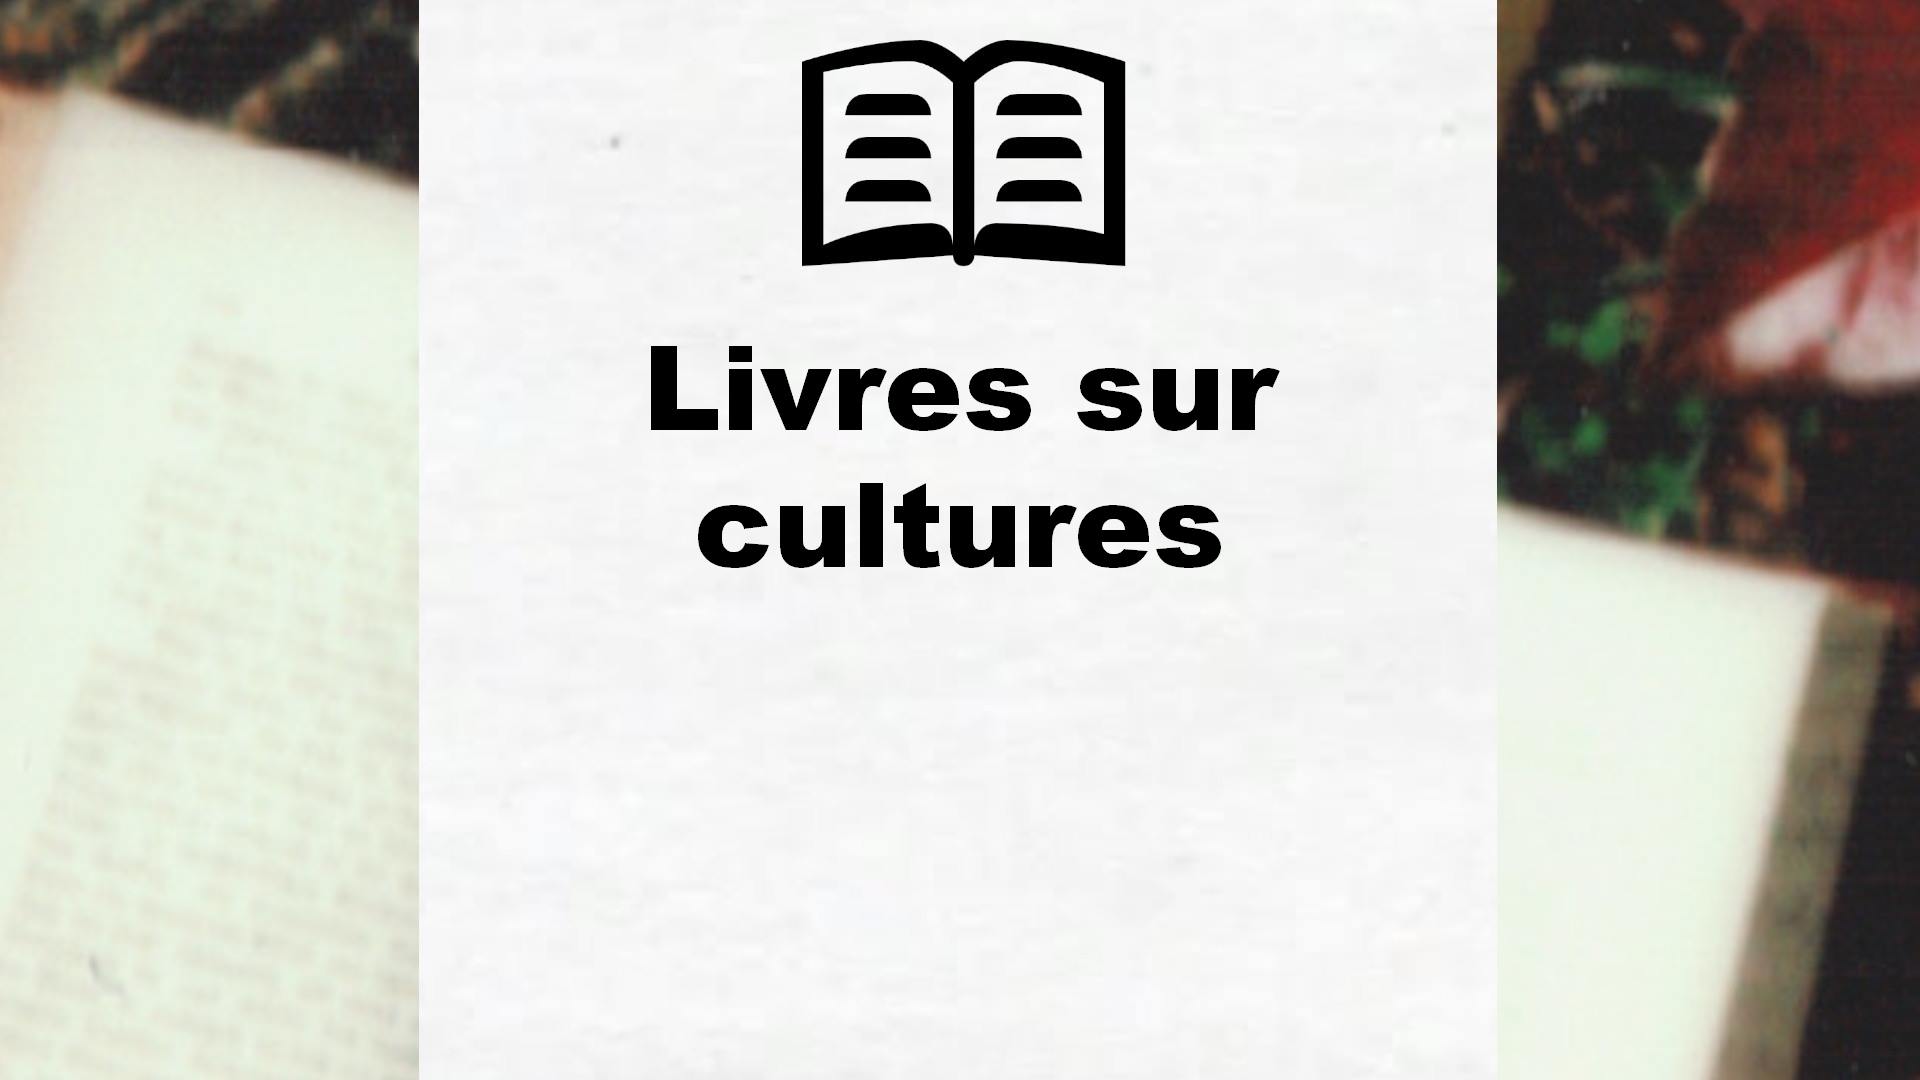 Livres sur cultures